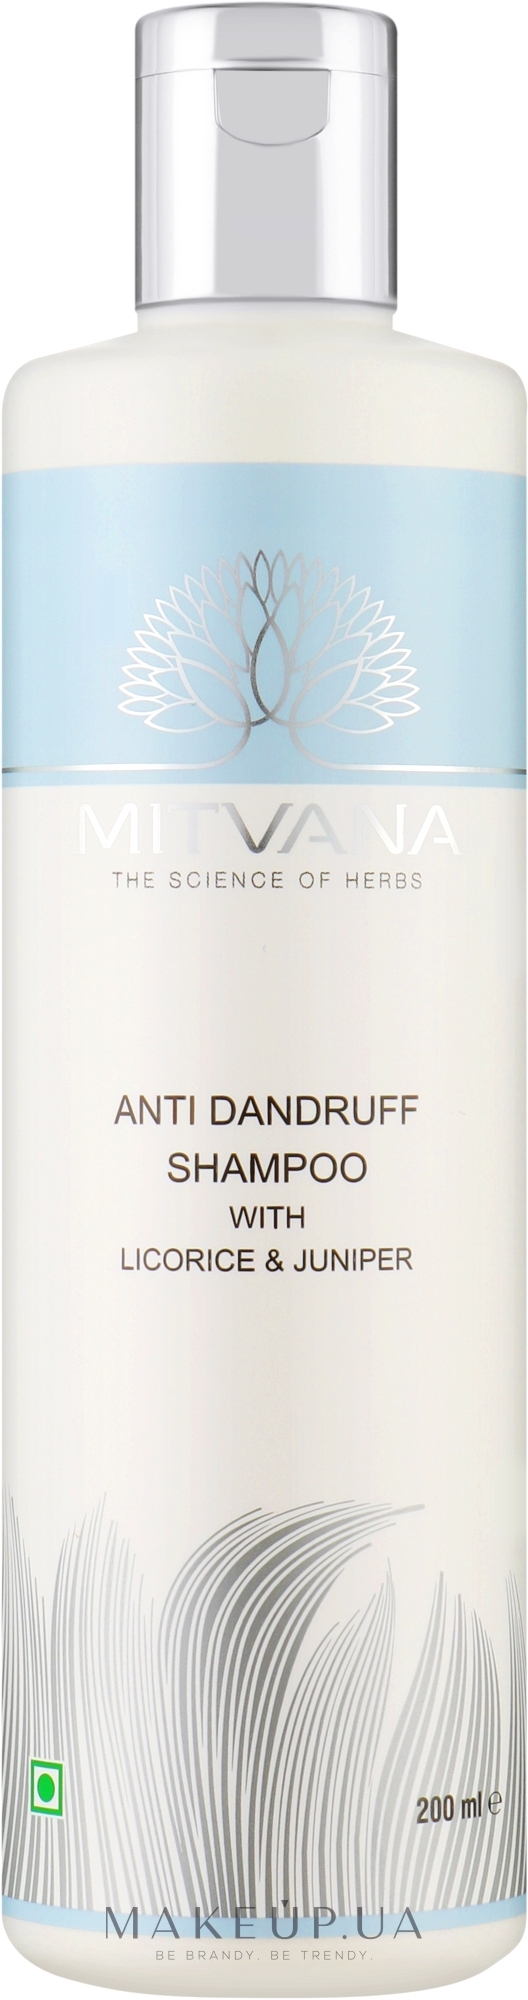 Шампунь для волос против перхоти с можжевельником и лакрицей - Mitvana Anti Dandruff Shampoo — фото 200ml